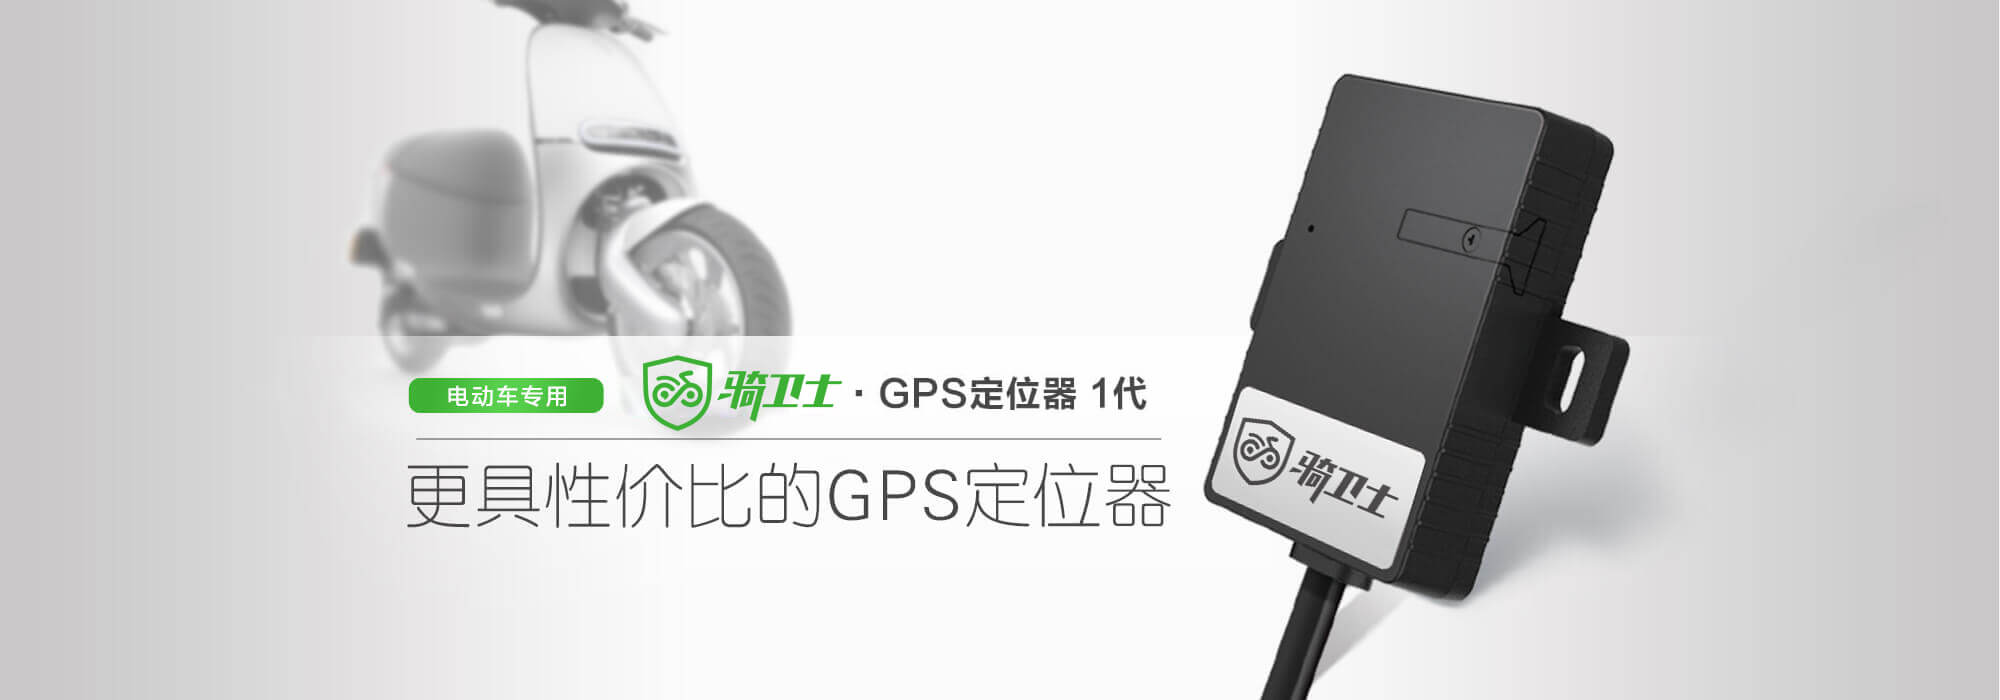 骑卫士-GPS定位器 1代